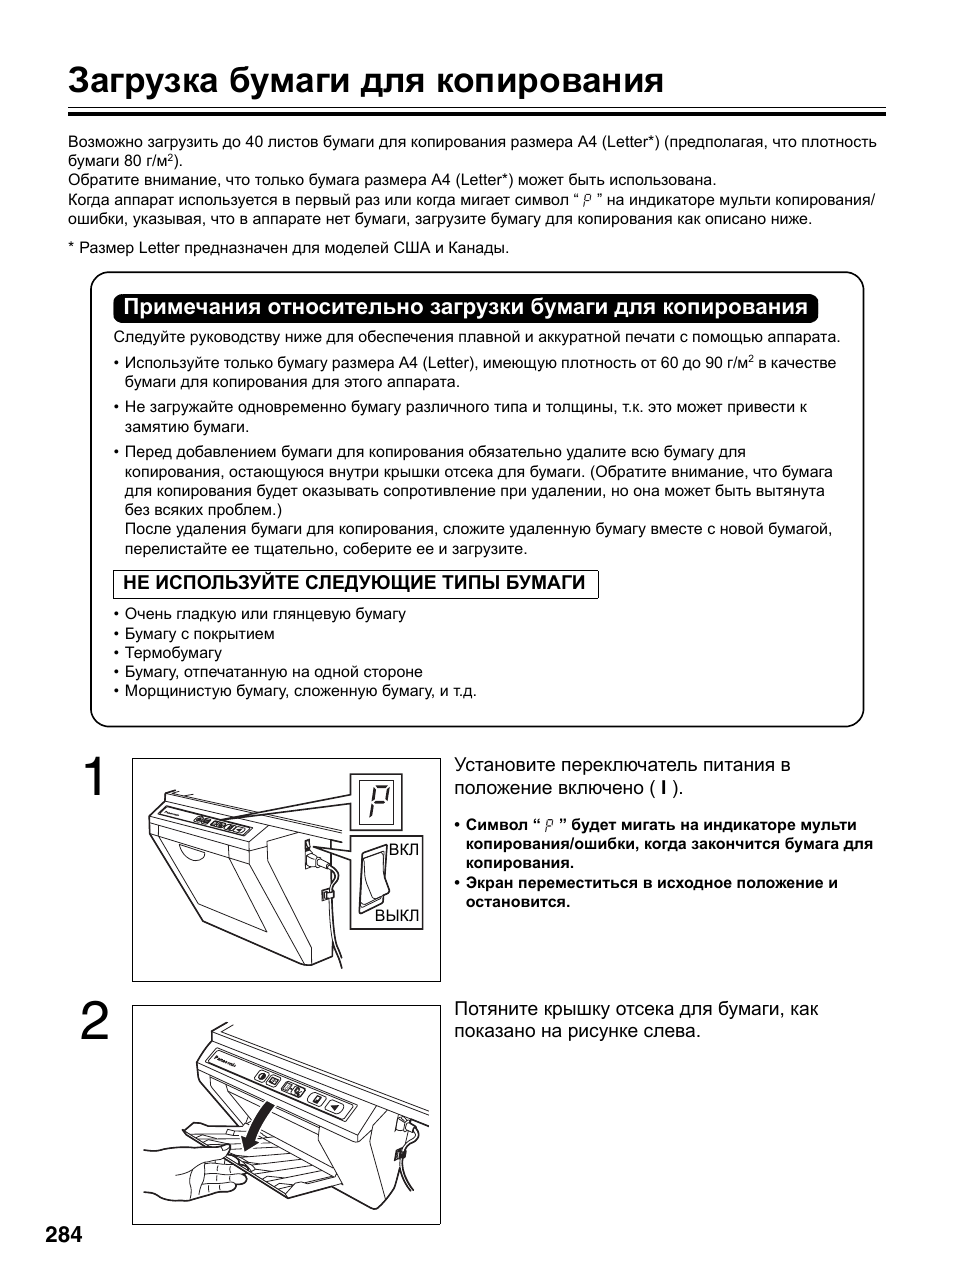 Загрузка бумаги для копирования | Инструкция по эксплуатации Panasonic UB-5315 | Страница 12 / 36